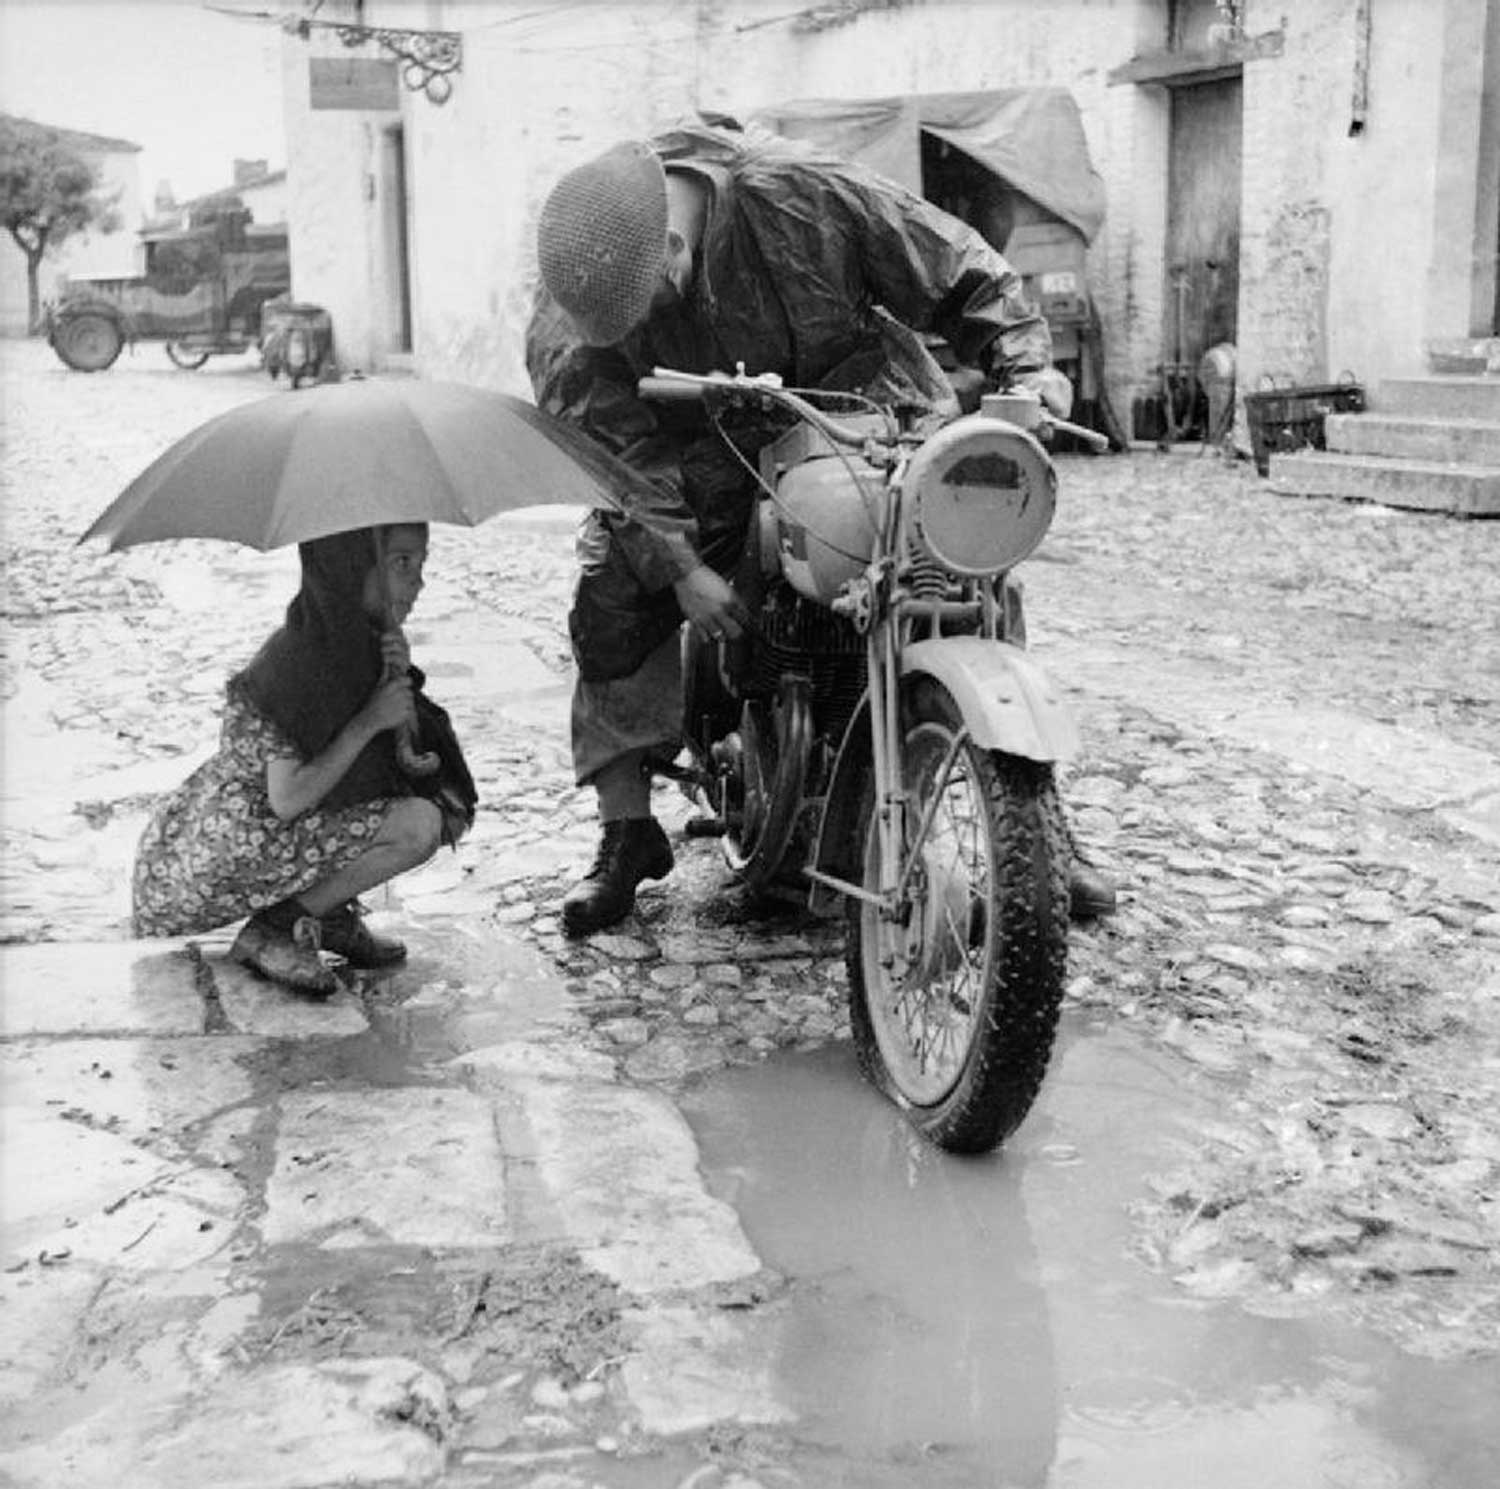 Ride-in-winter-rain